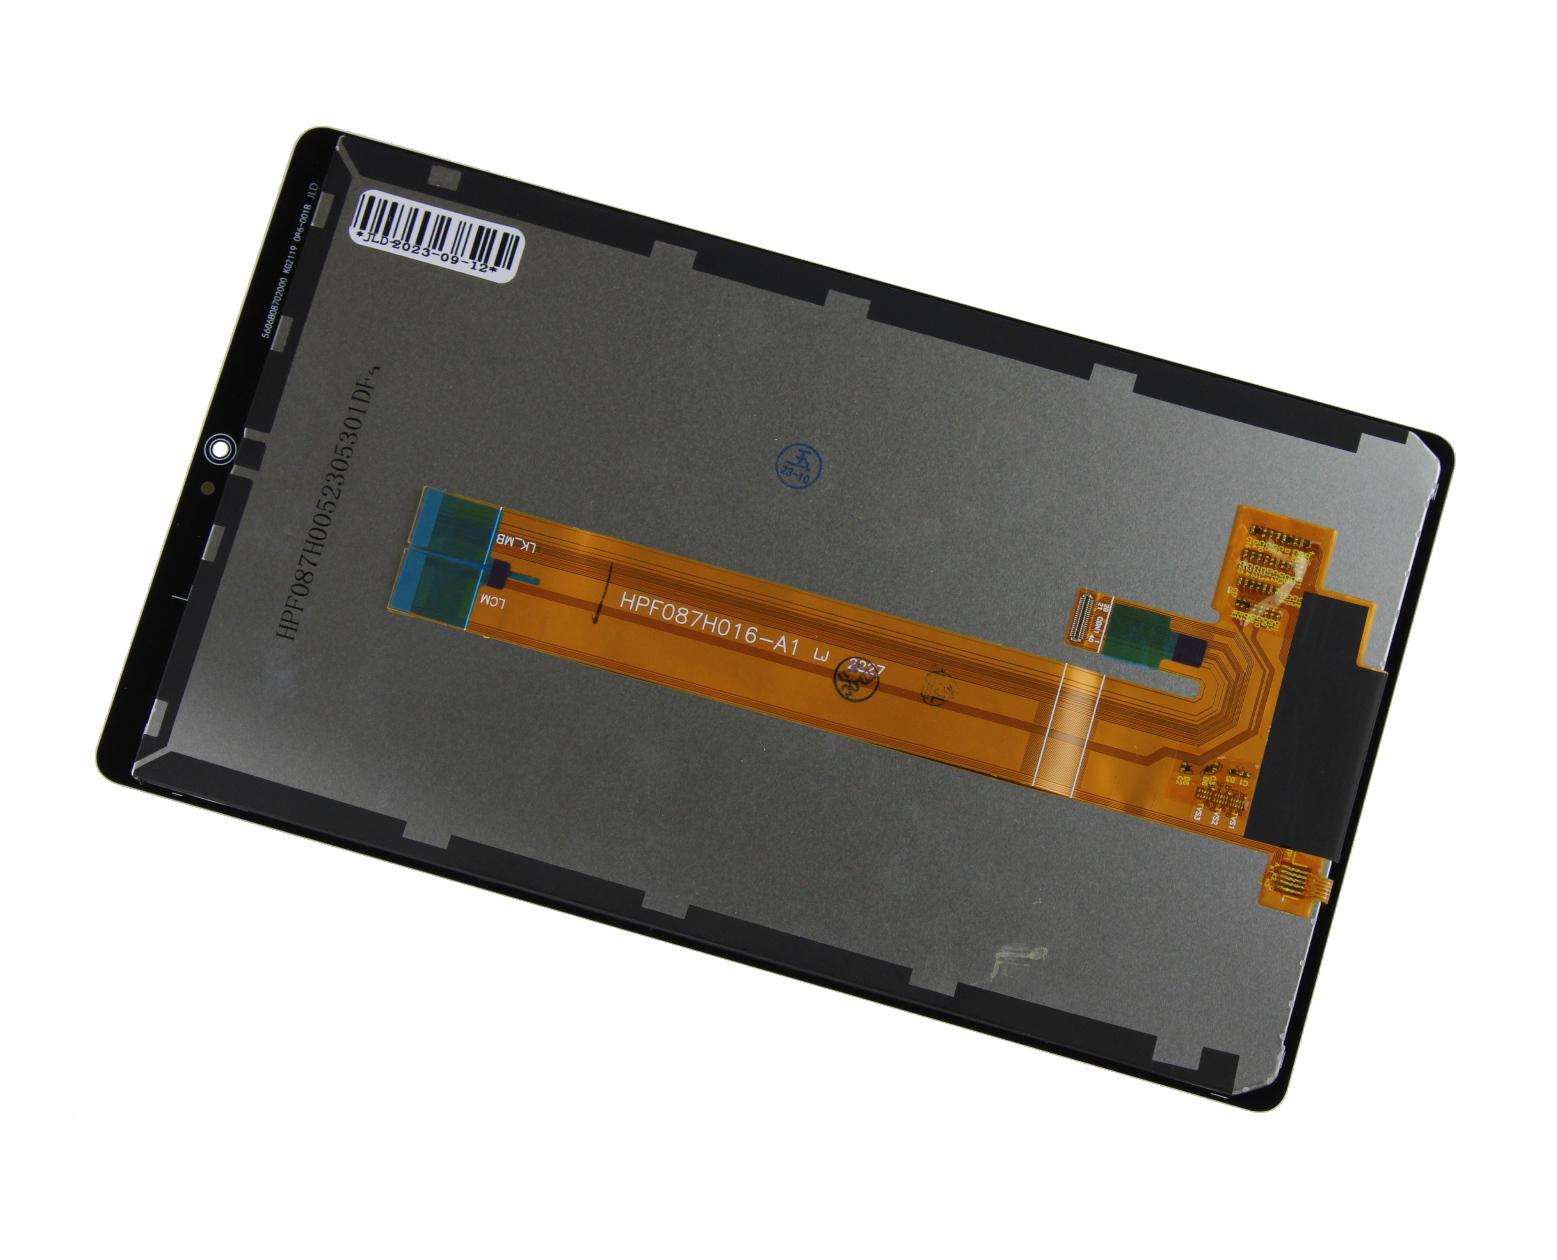 Originál LCD + Dotyková vrstva Samsung Galaxy Tab A7 Lite Wifi SM-T220 černá repasovaný díl - vyměněné sklíčko